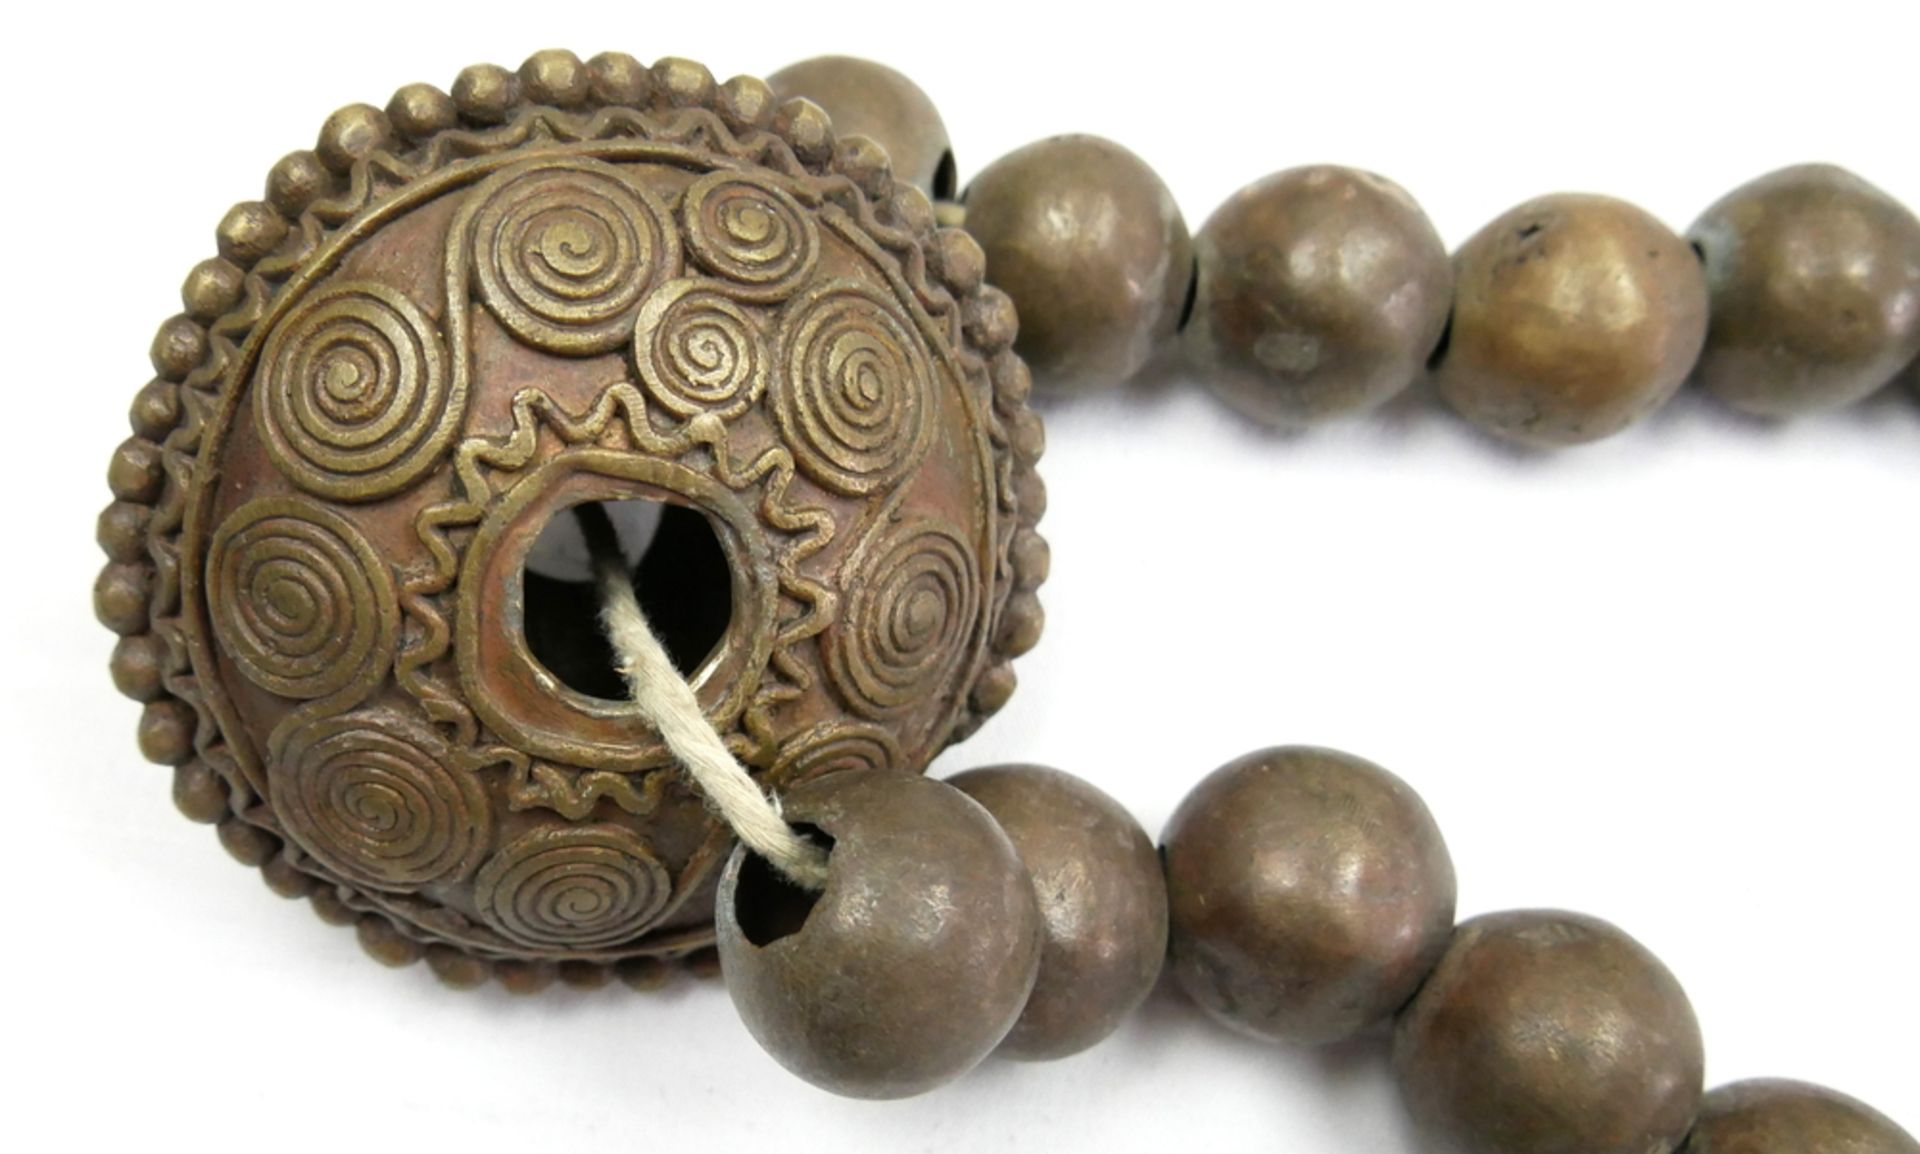 Seltene Halskette aus Bronze oder Messing, die von dem wenig bekannten Vere-Volk getragen wird, - Image 2 of 2